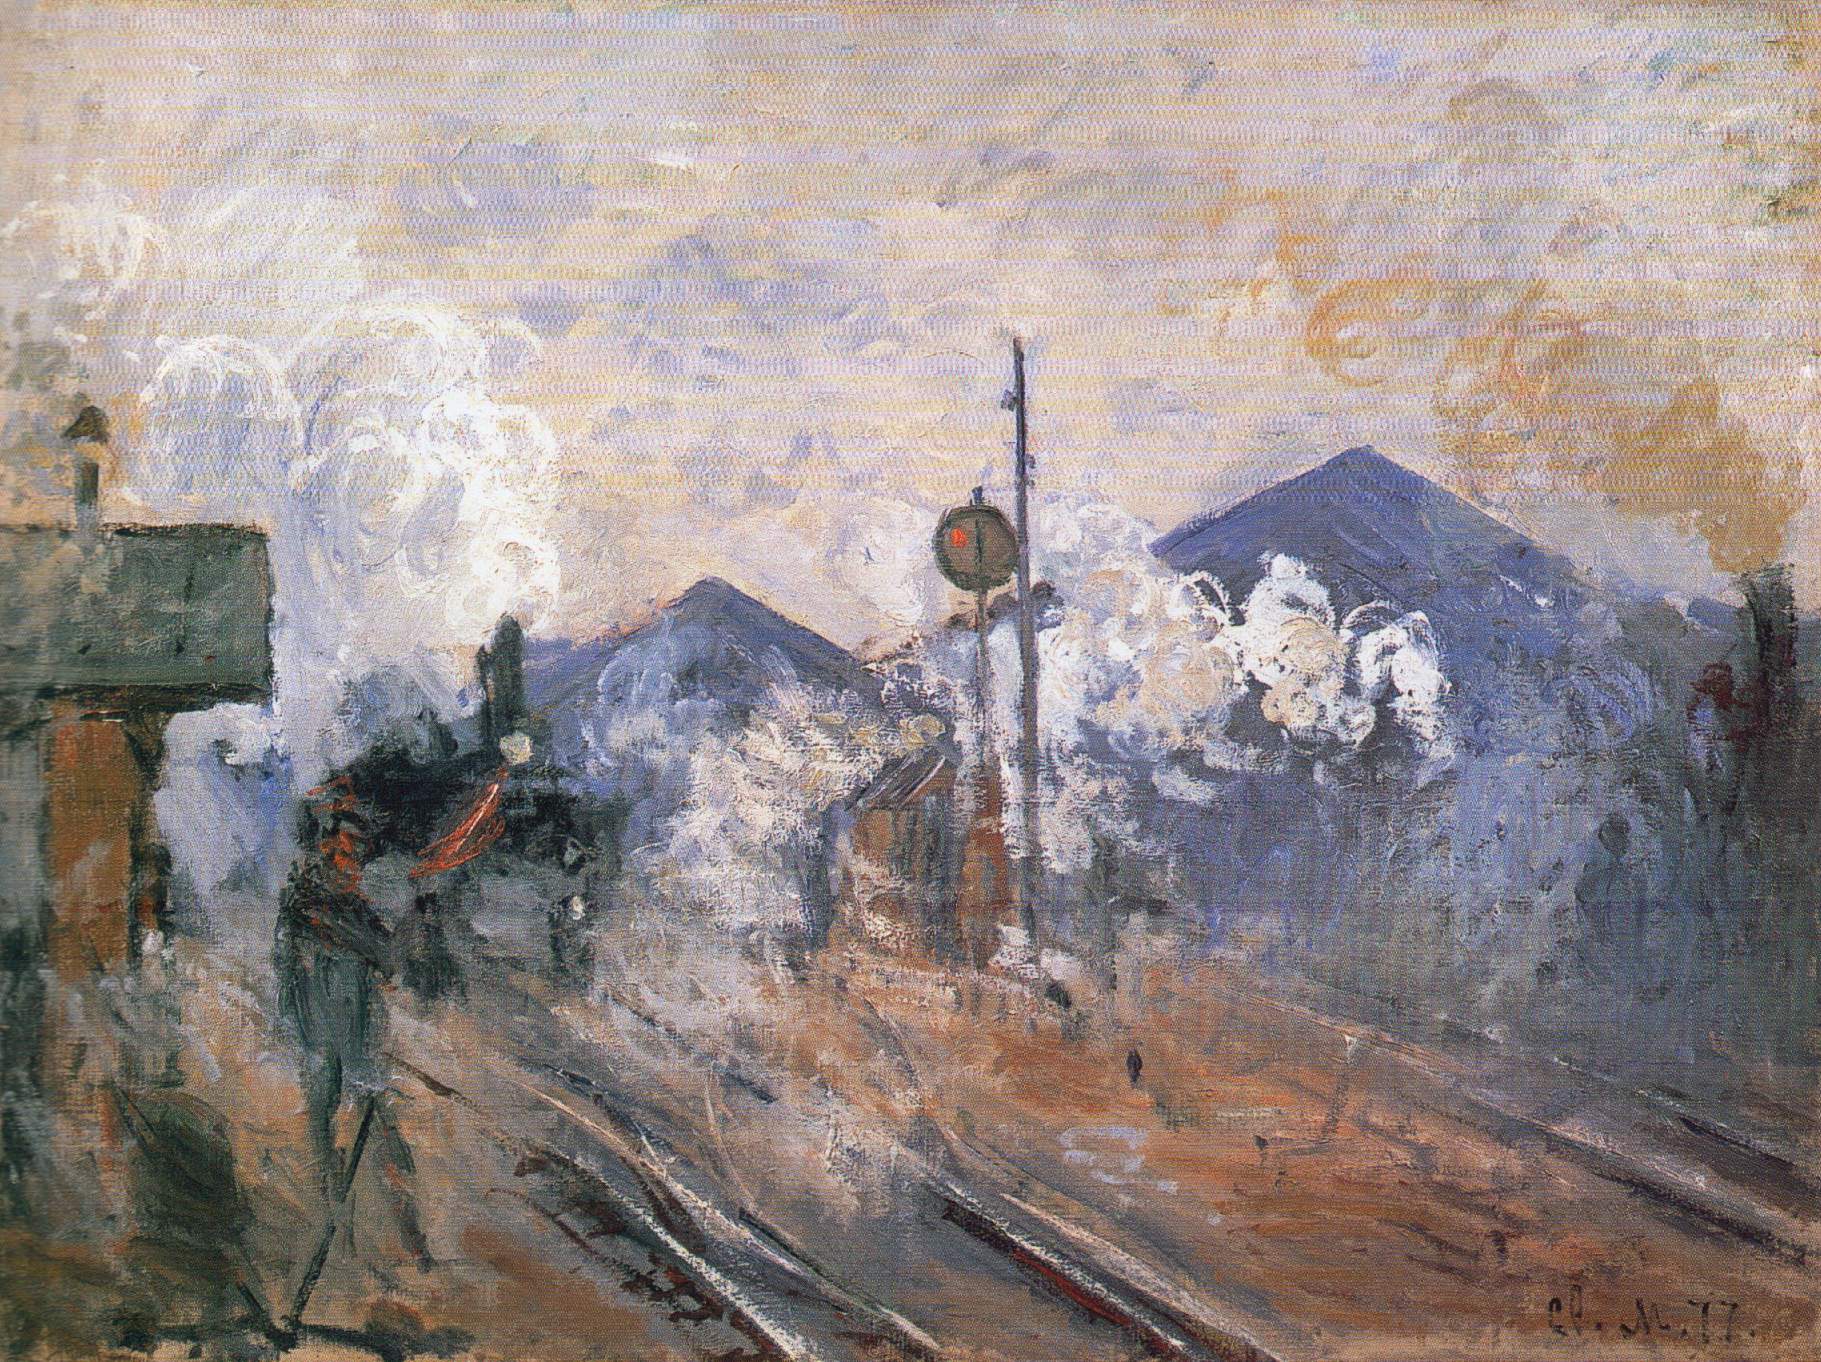 Les Voies à la sortie de la gare Saint-Lazare - Claude Monet